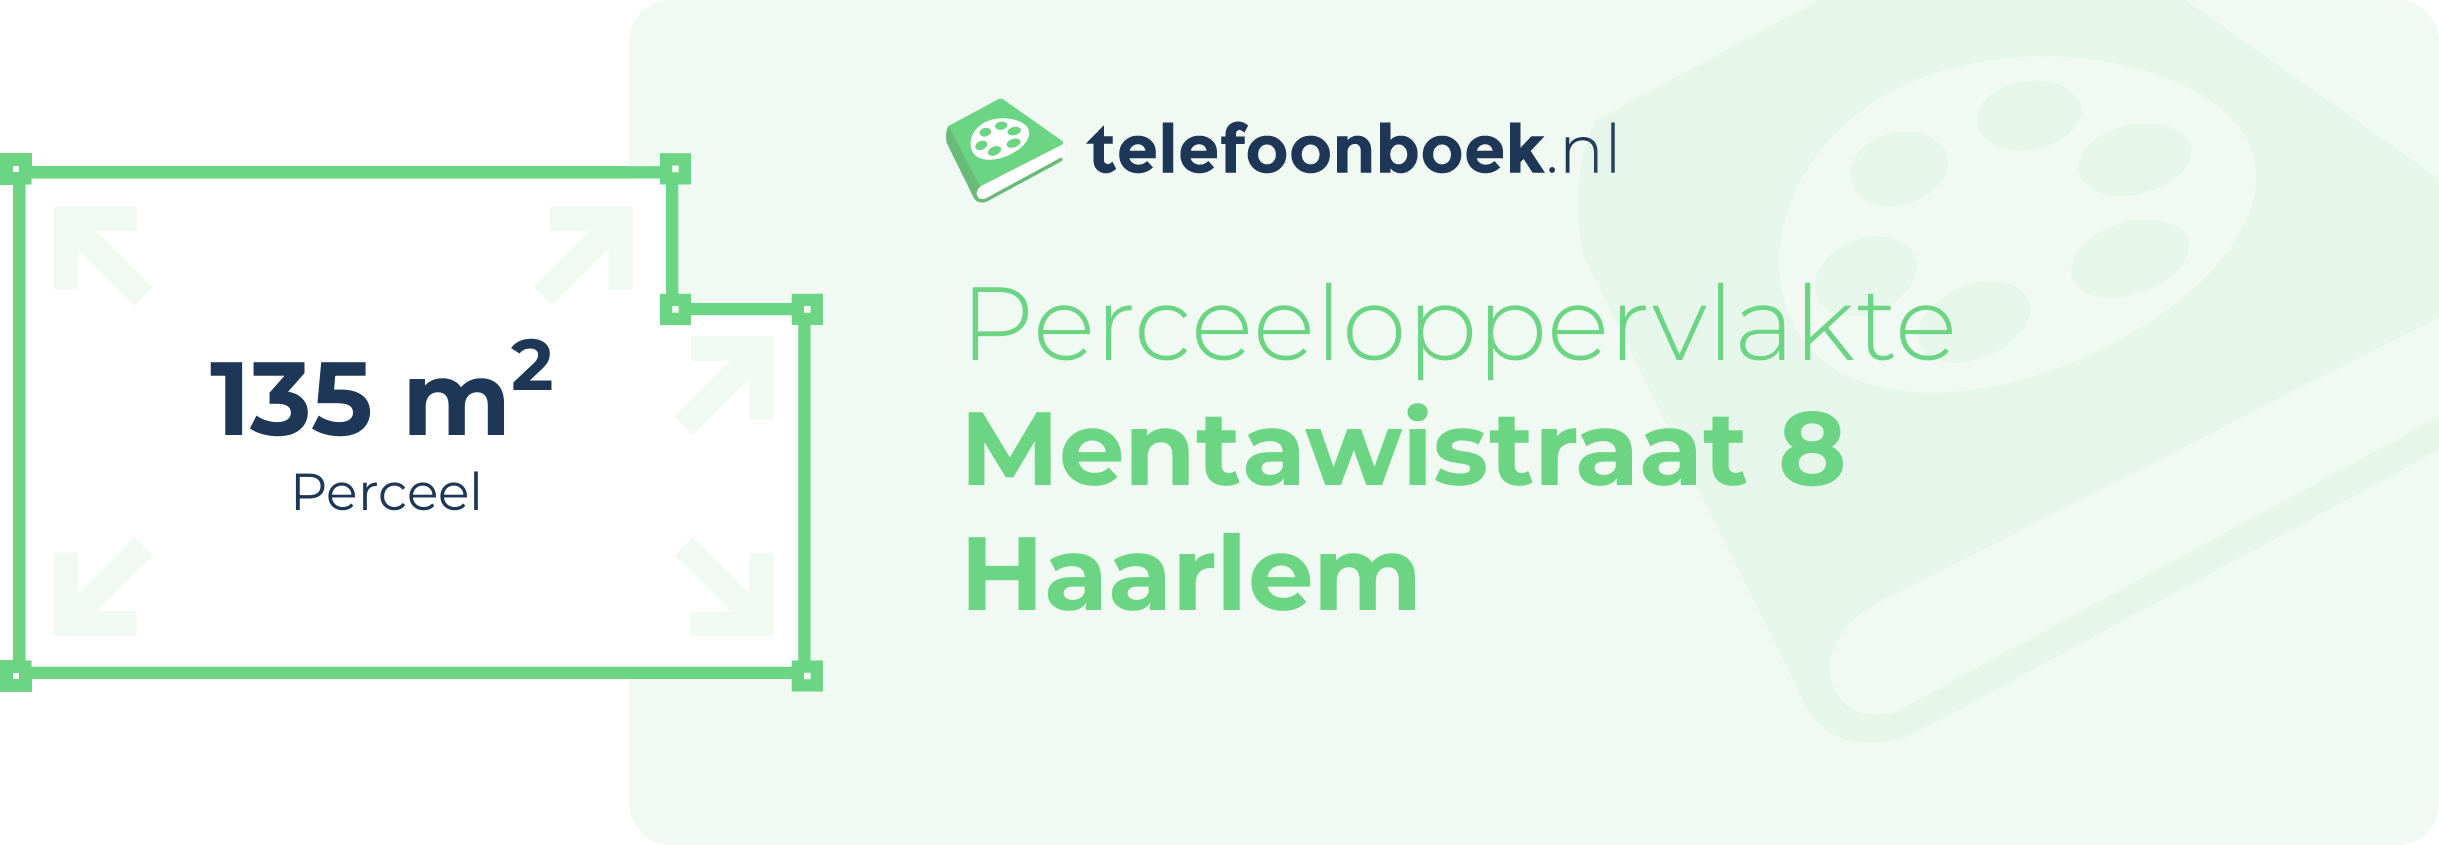 Perceeloppervlakte Mentawistraat 8 Haarlem